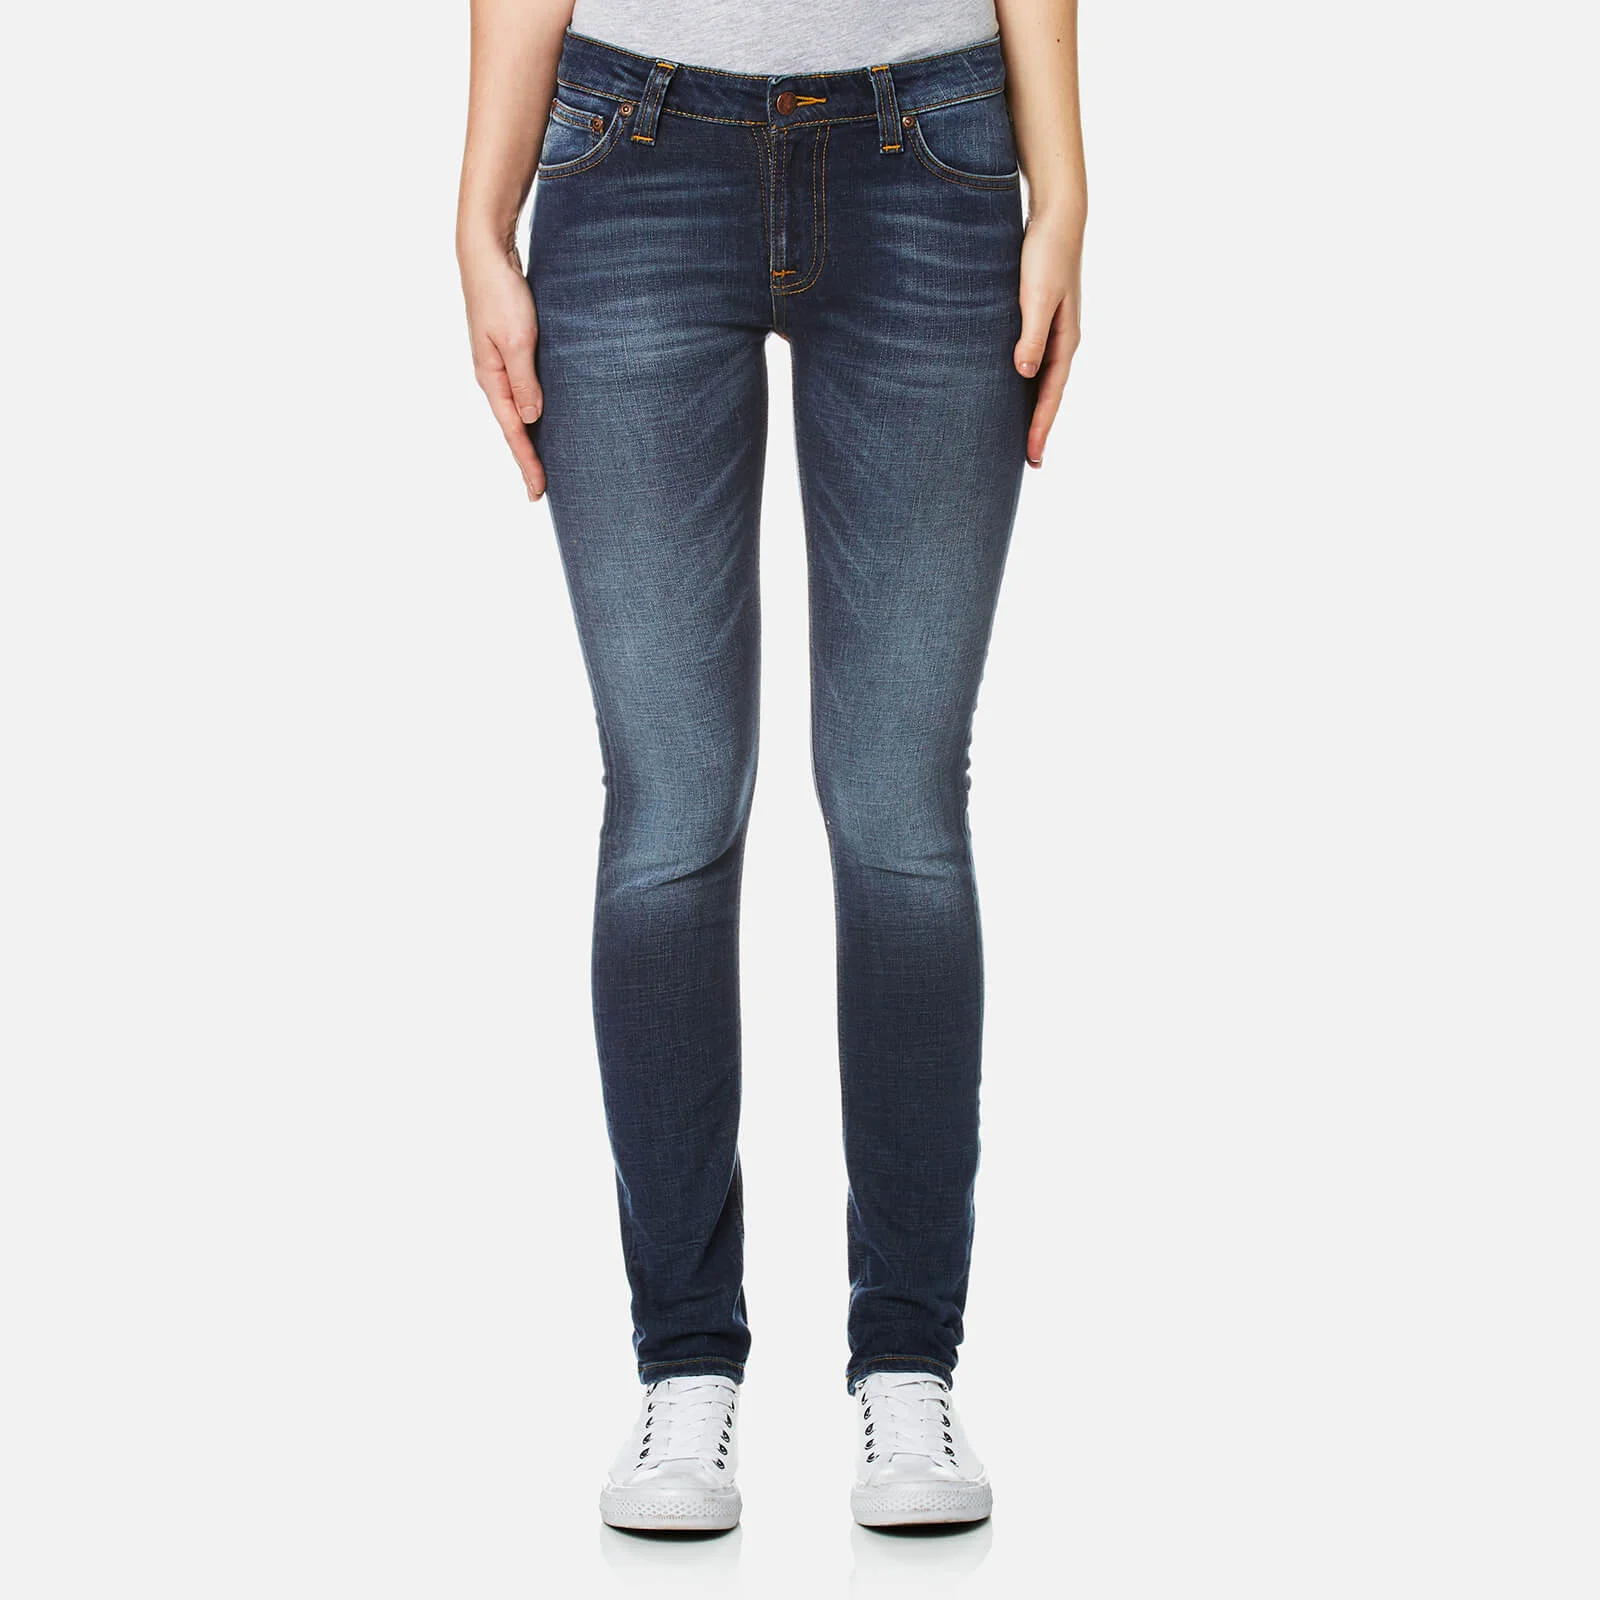 Nudie Jeans Women's Skinny Lin Jeans - Tender Worn Image 1